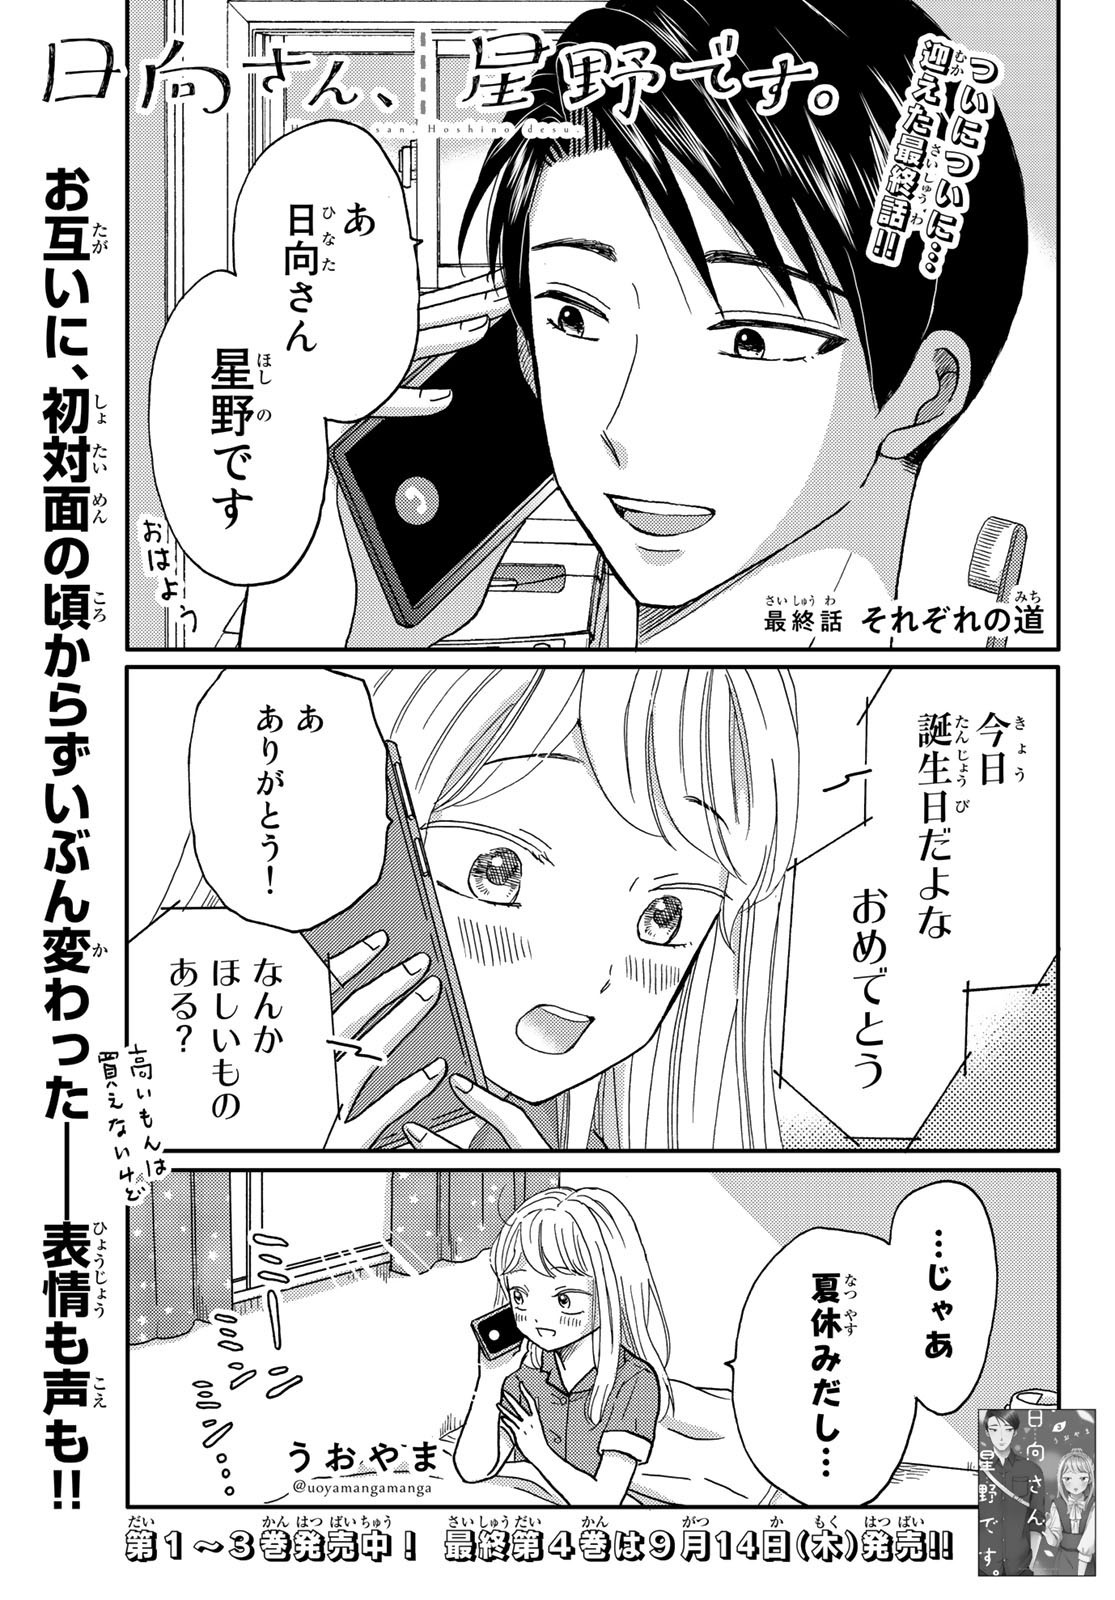 Hinata-san, Hoshino desu. - Chapter Final - Page 1